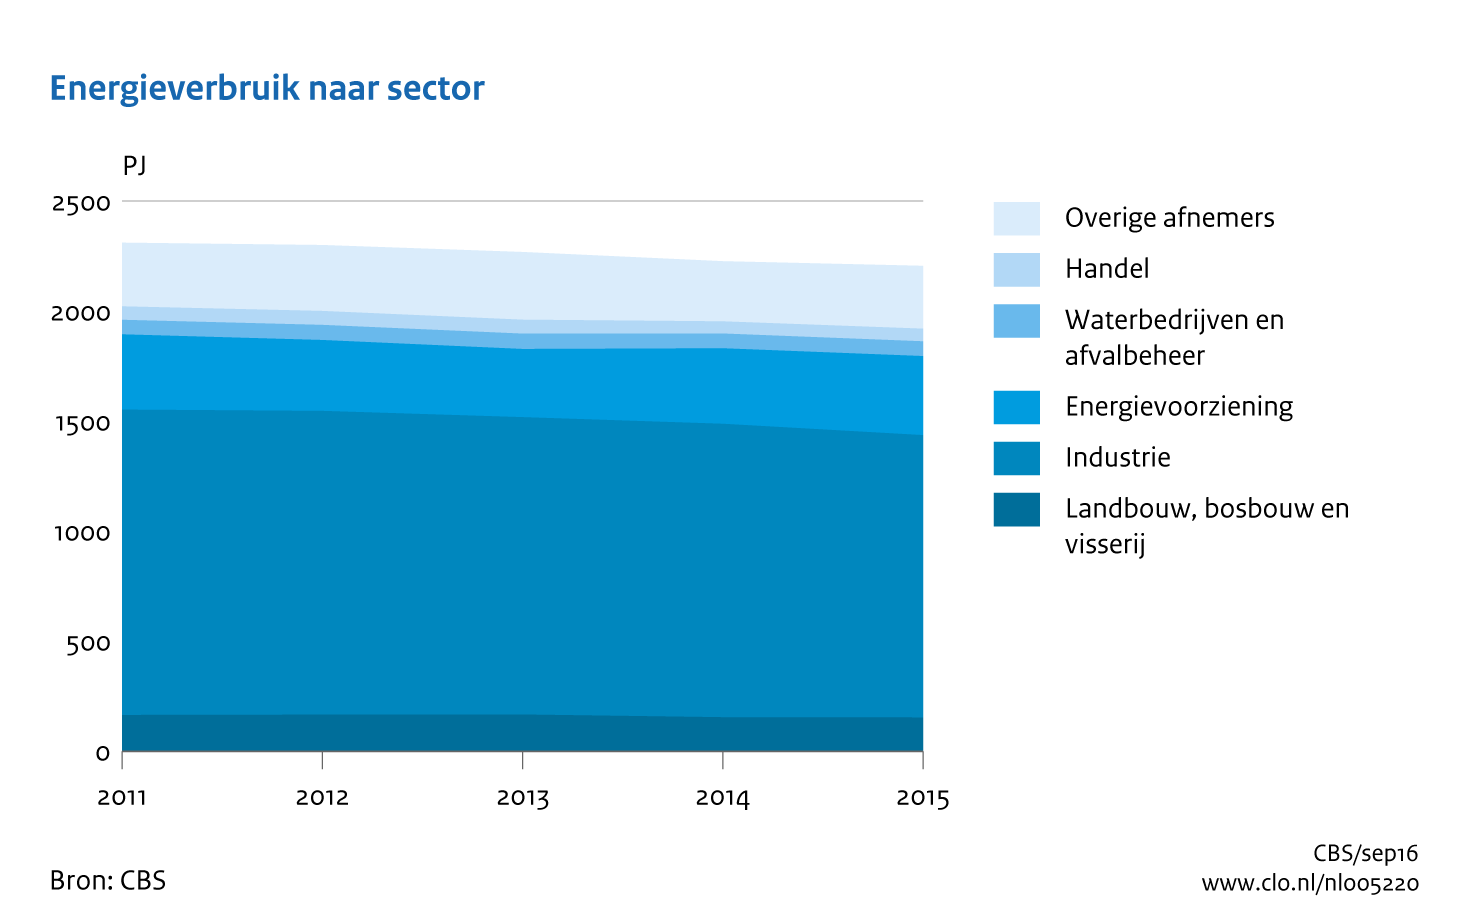 Figuur Tijdreeks 2011-2015 energieverbruik per sector. In de rest van de tekst wordt deze figuur uitgebreider uitgelegd.